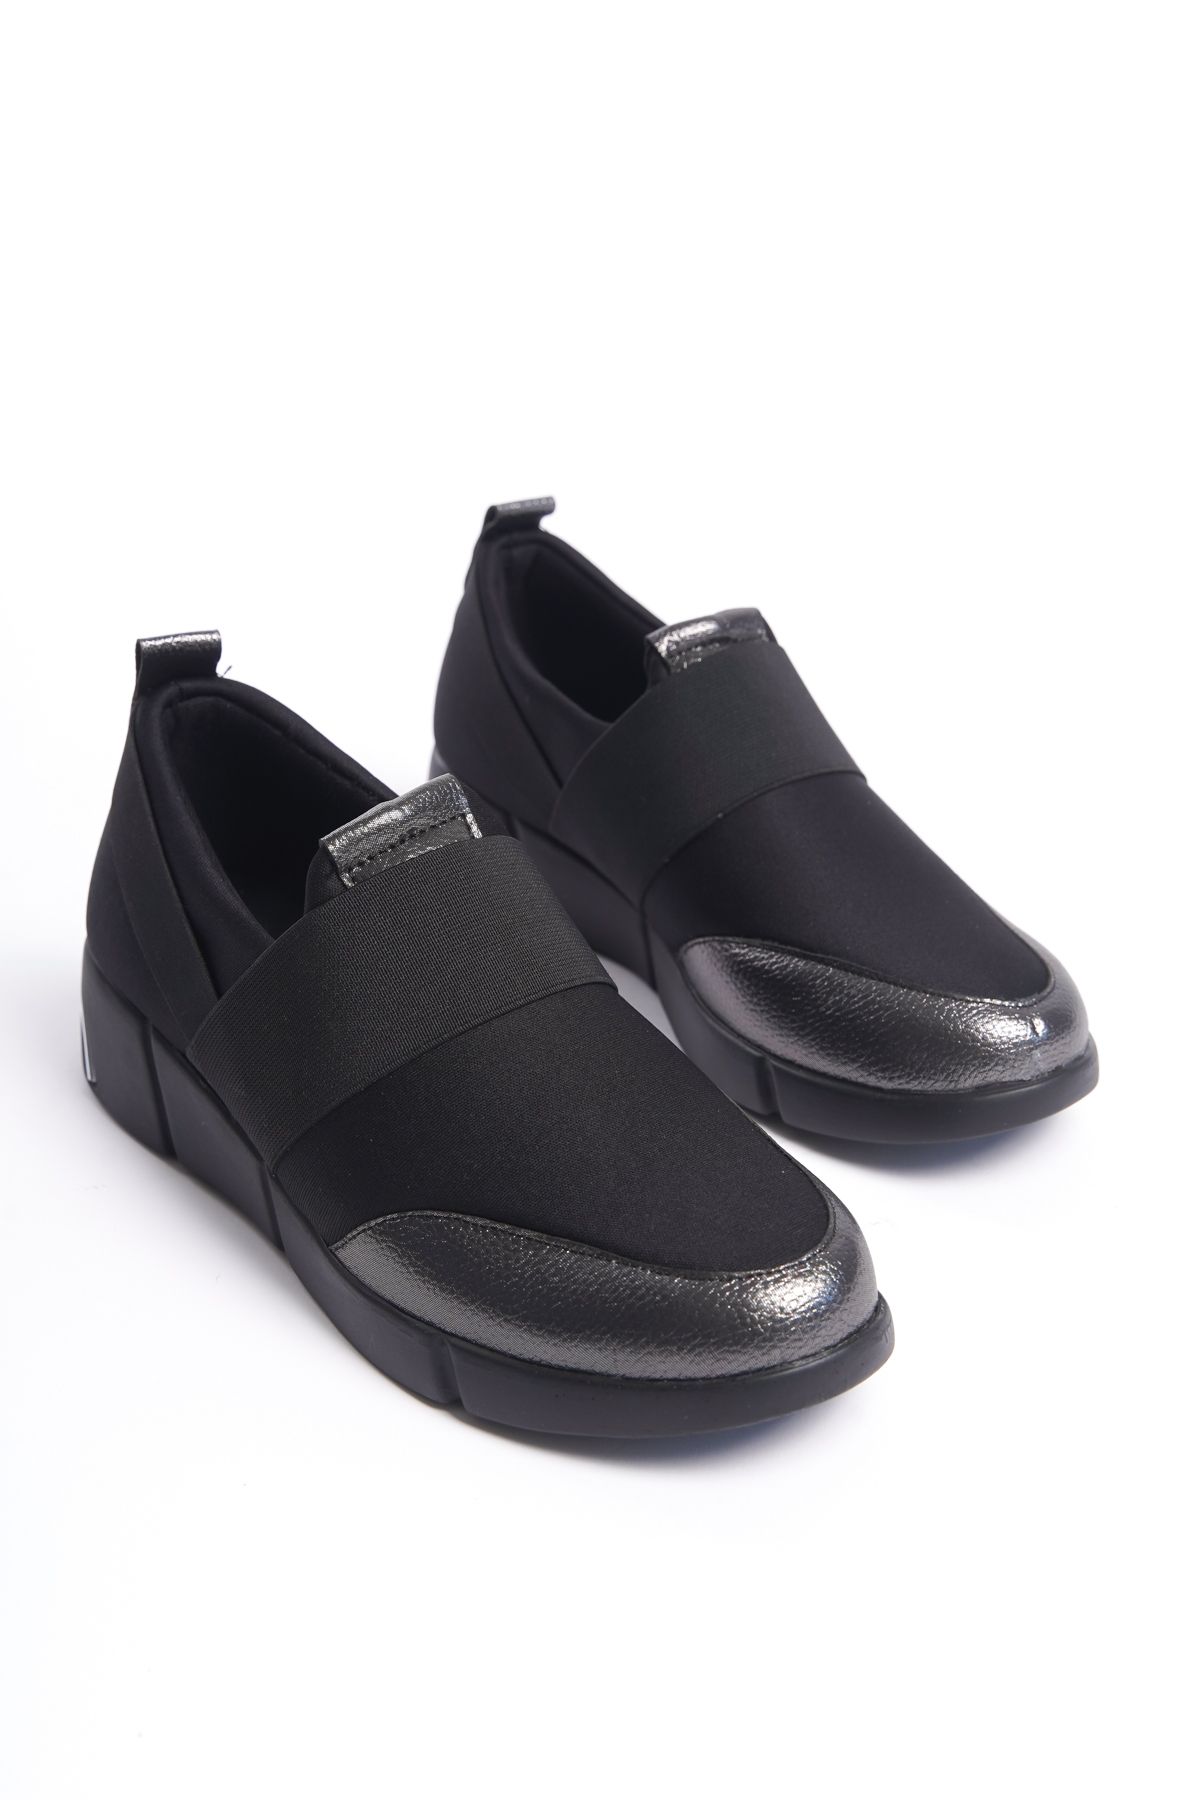 Shoesers Kadın Özel Tasarım Rahat Tabanlı Sade ve Şık Yürüyüş Ayakkabısı